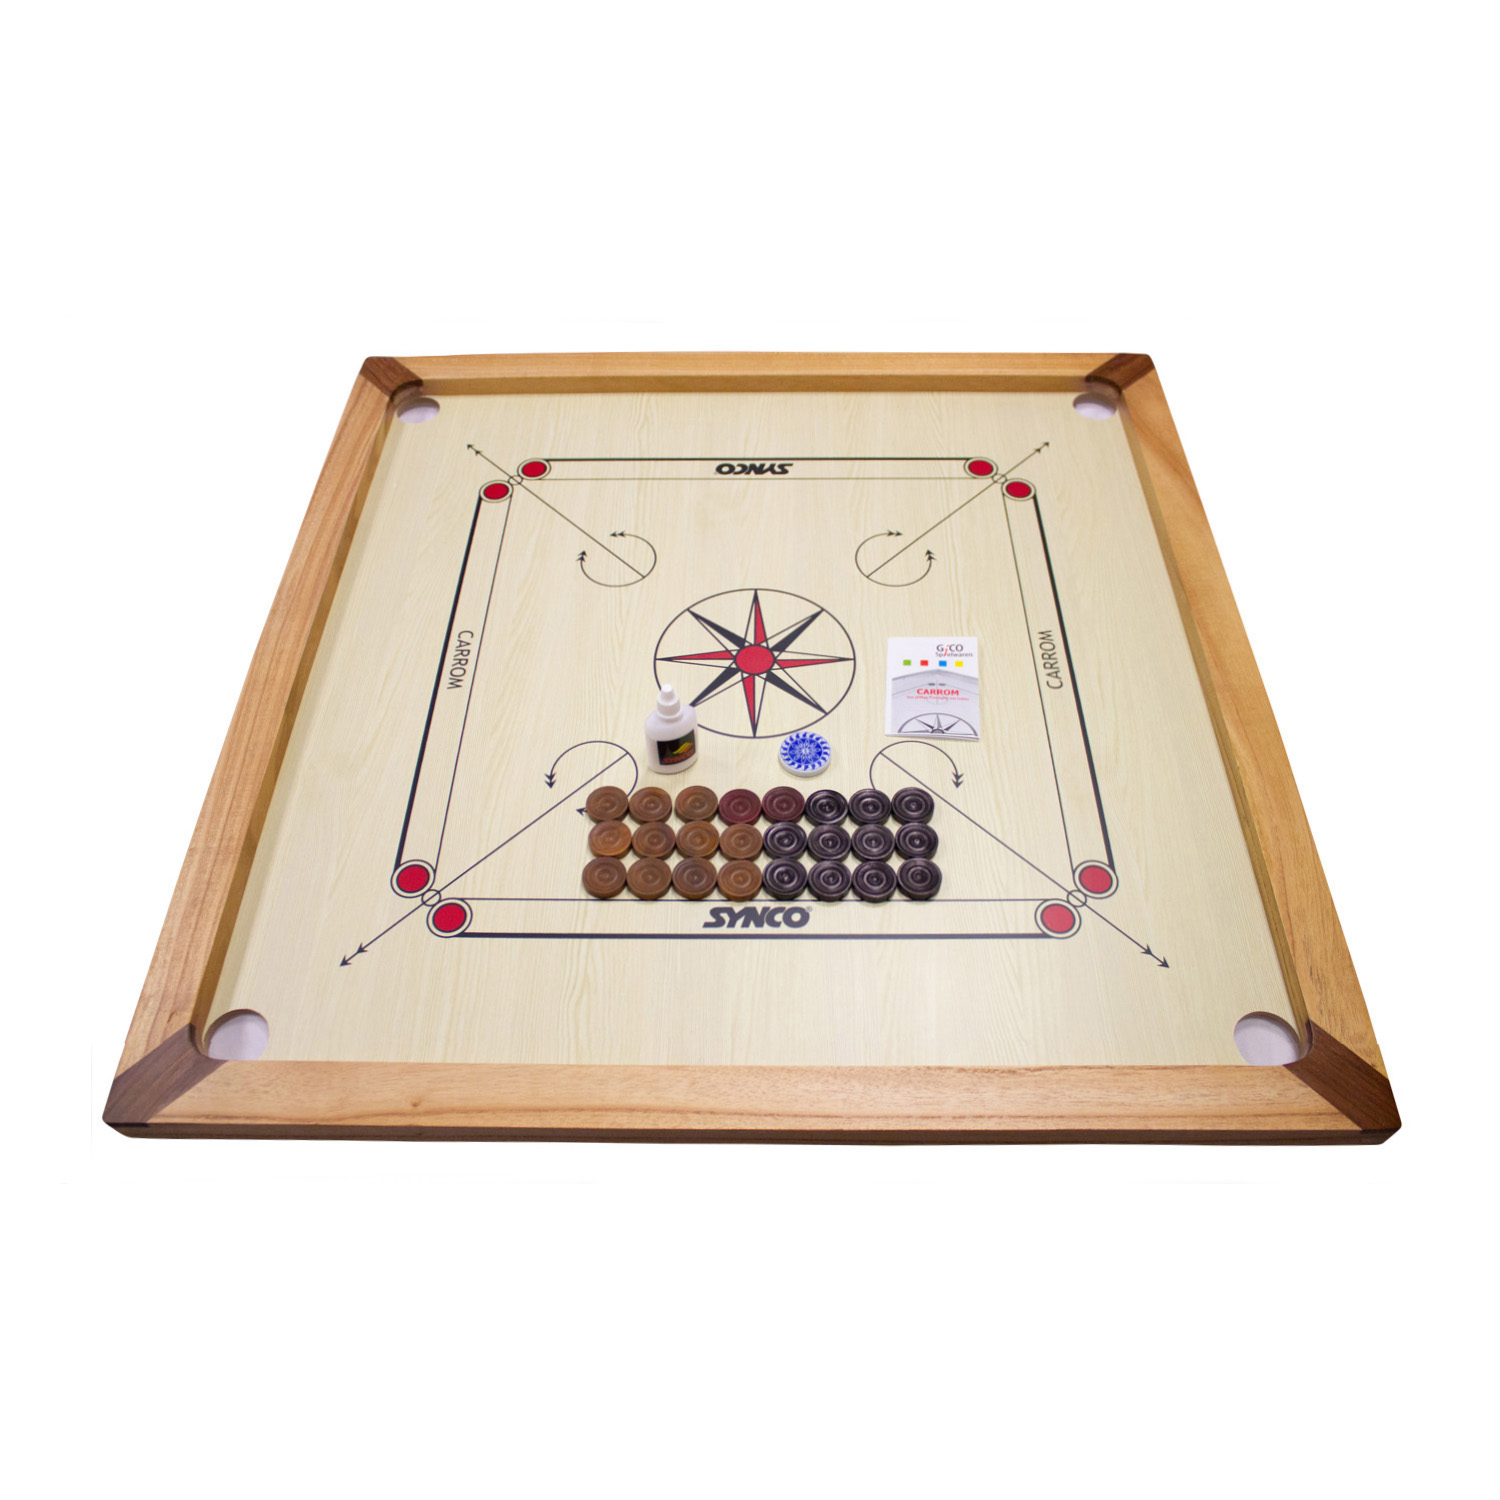 GICO Carrom Board Turnier 83 cm - Spielbrett Komplettset mit Steinen, Tasche & Gleitpulver 2983